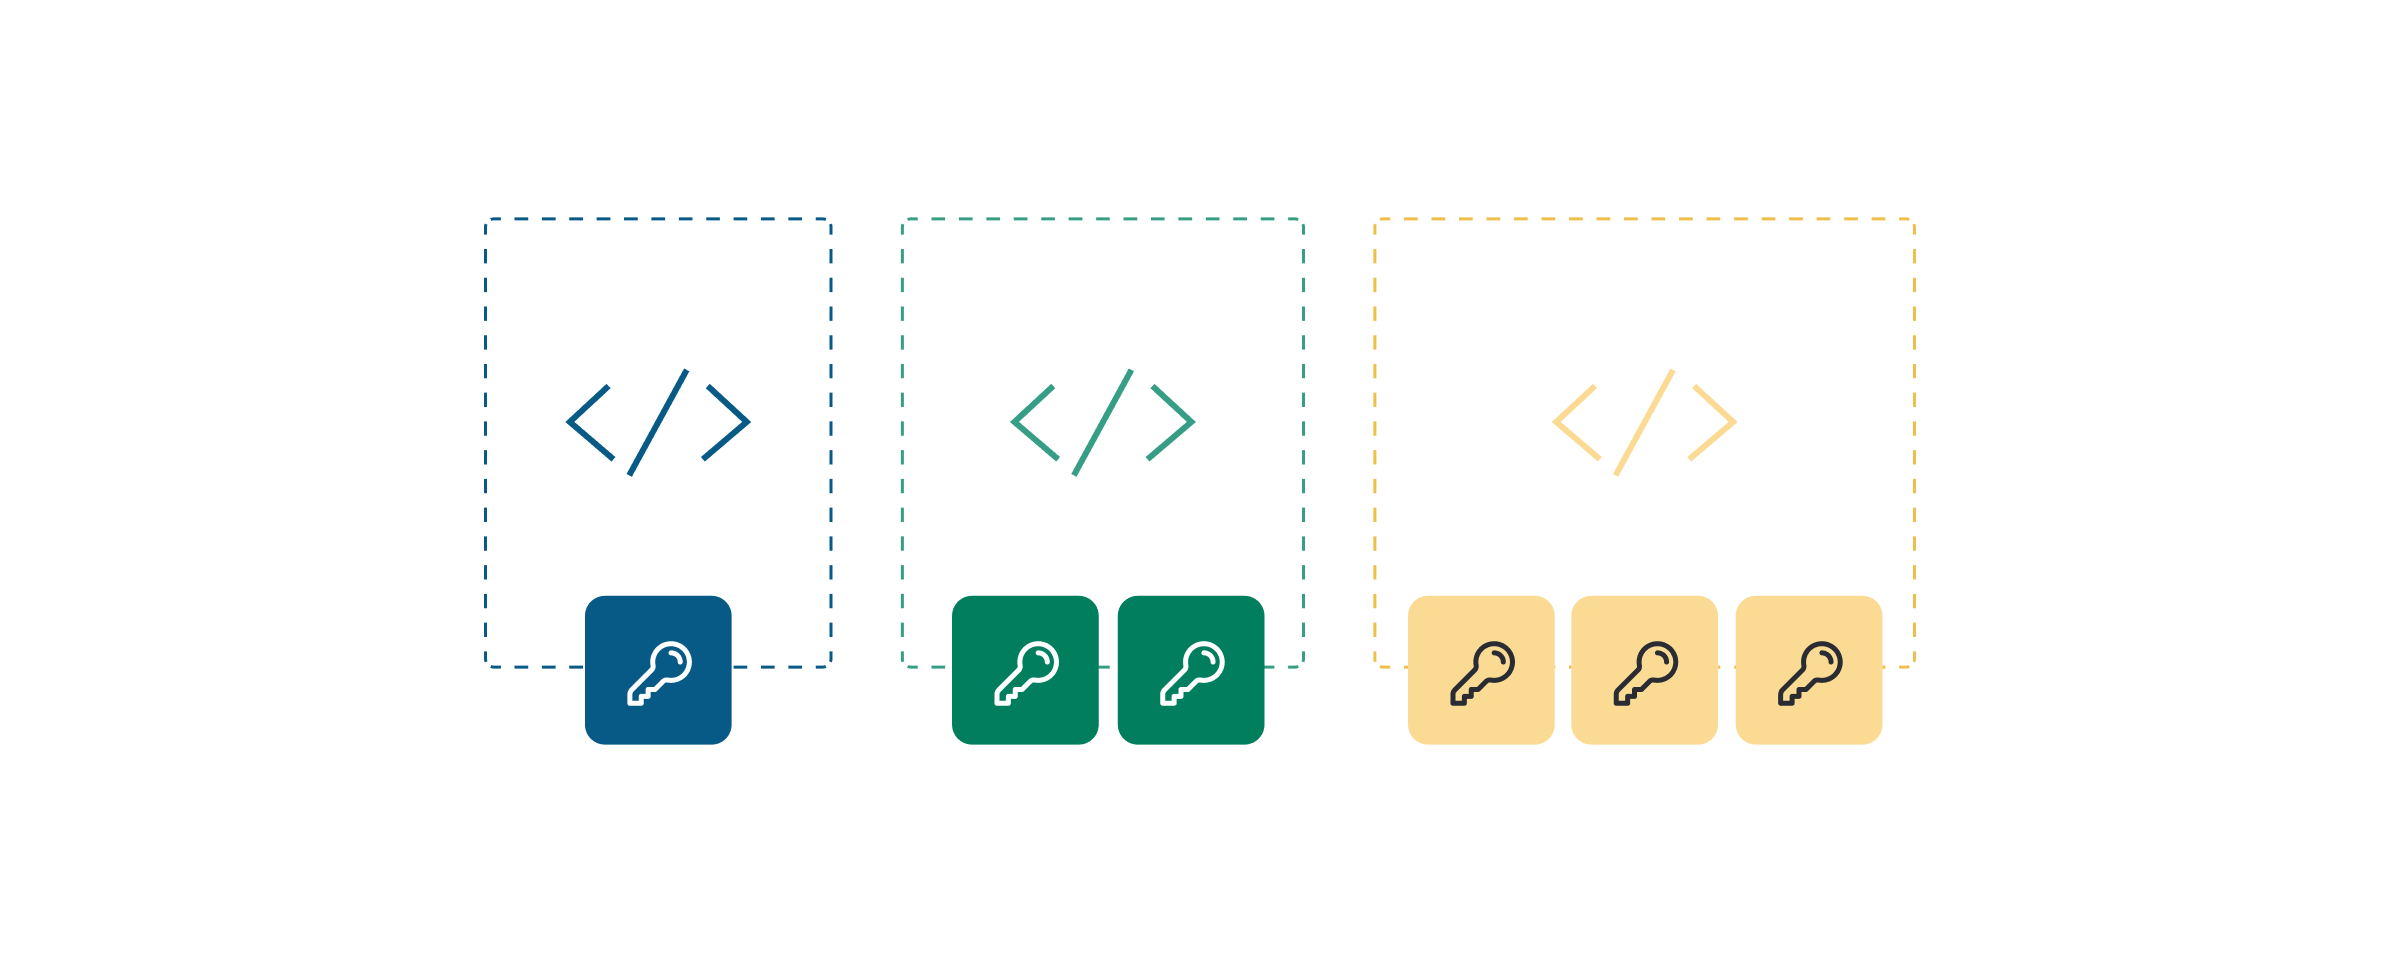 Ilustração que mostra chaves de API seguras e padrões de utilização em cores diferentes